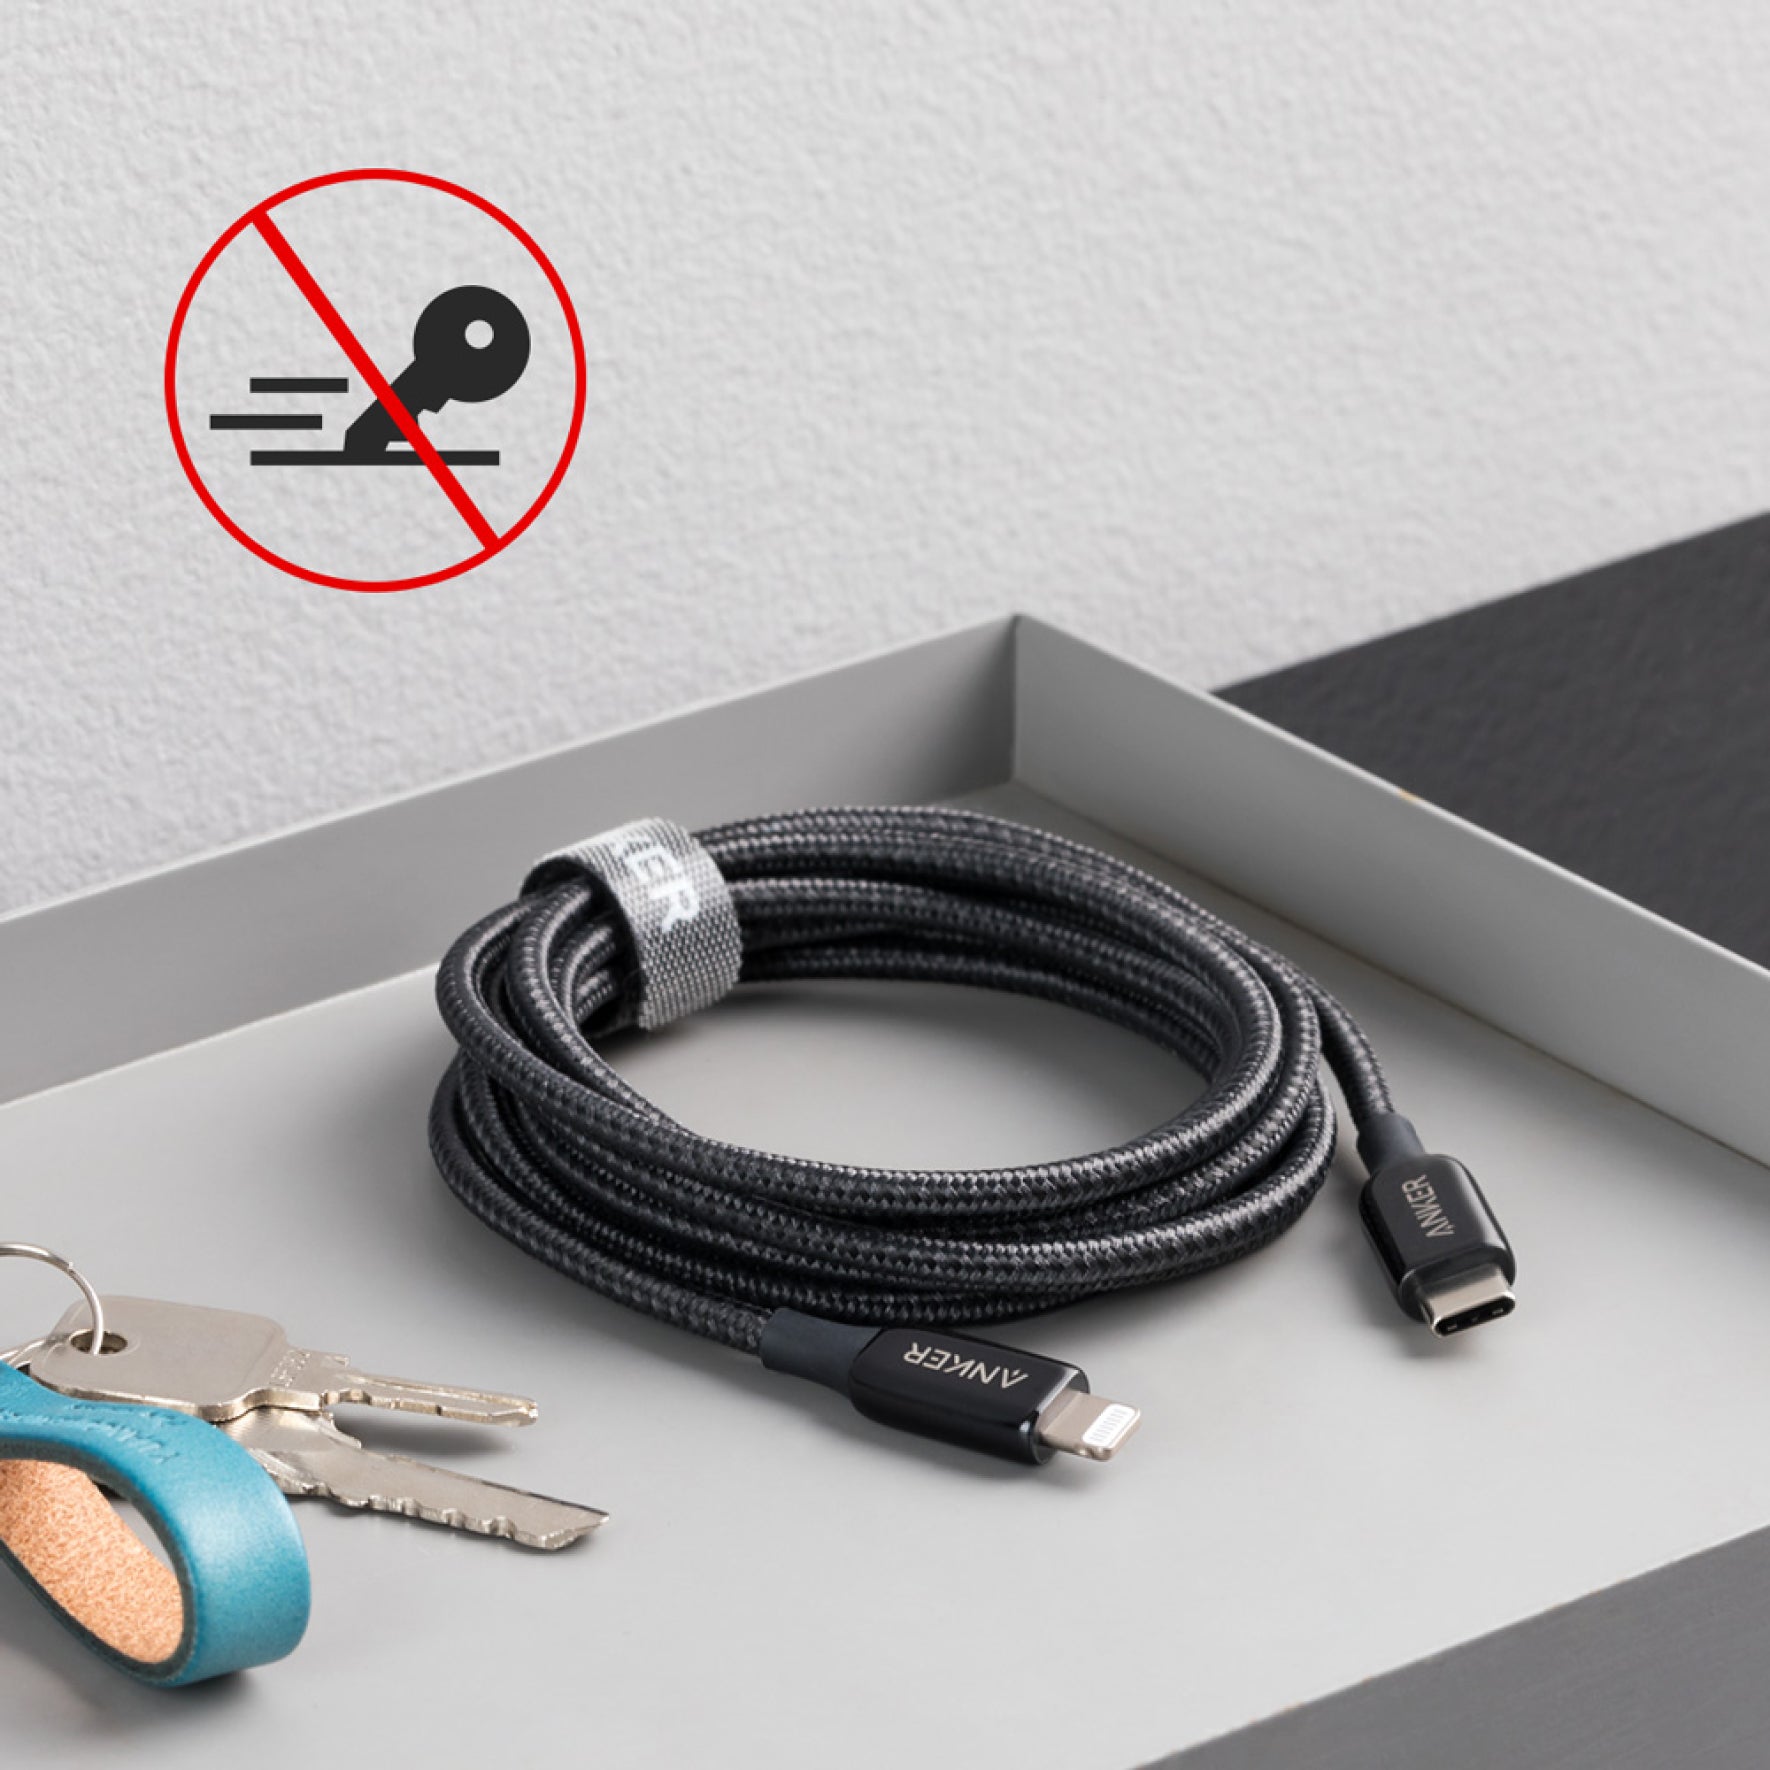 Anker 762 USB-C to Lightning Cable (3 ft / 6 ft Nylon)